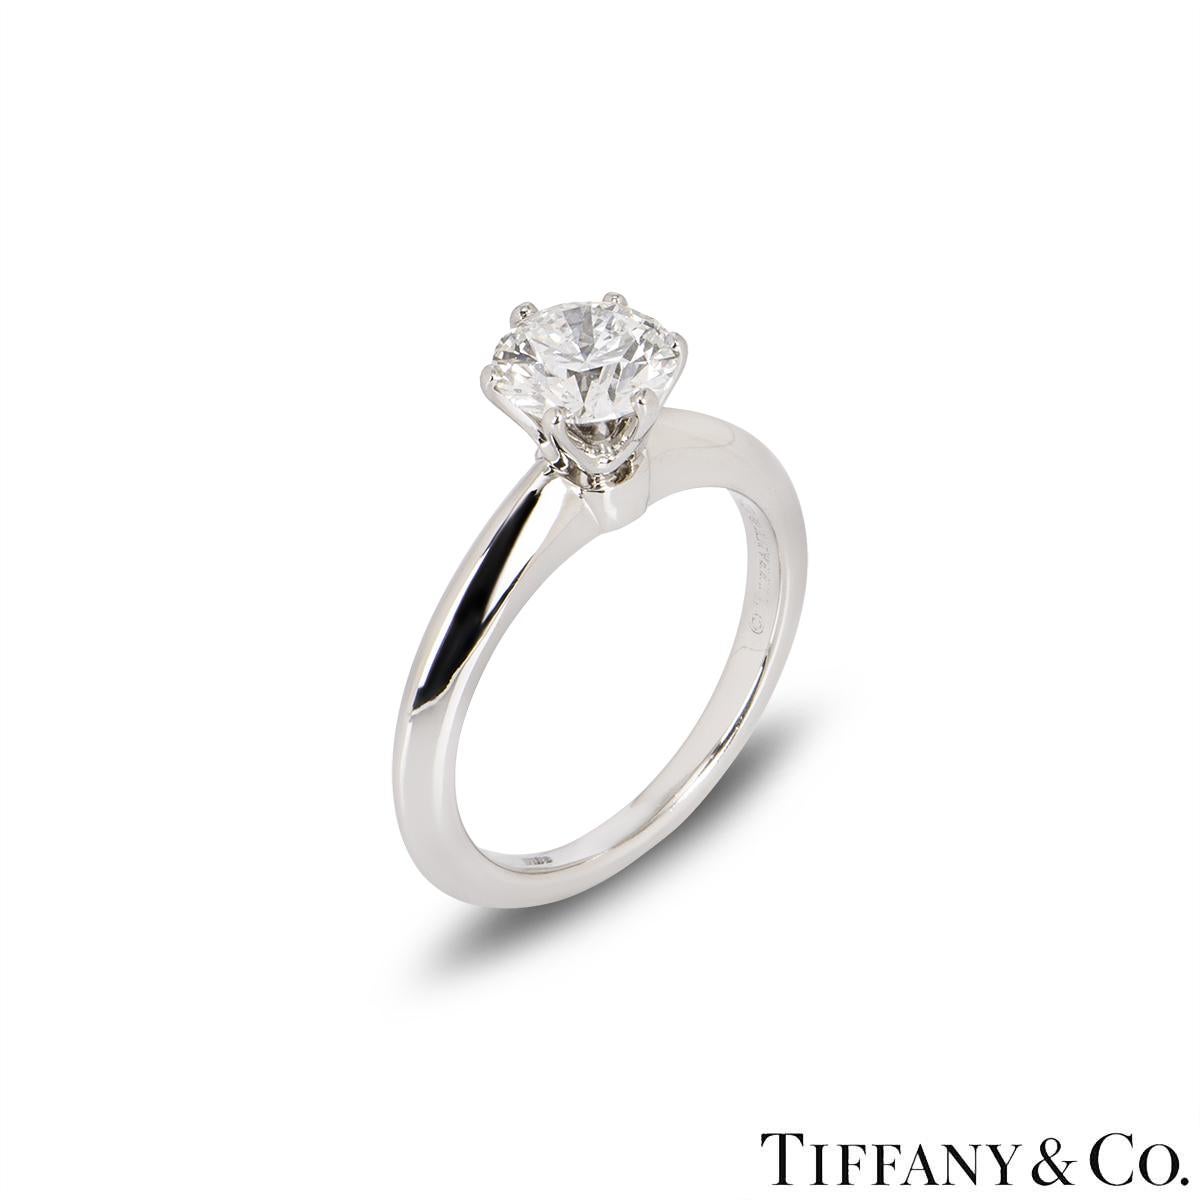 Ein klassischer Platin-Diamantring von Tiffany & Co. aus der Setting Collection. Der Ring besteht aus einem runden Diamanten im Brillantschliff in einer Platinfassung mit sechs Klauen und einem Gewicht von 1,08 ct, Farbe H und Reinheit VS2. Der